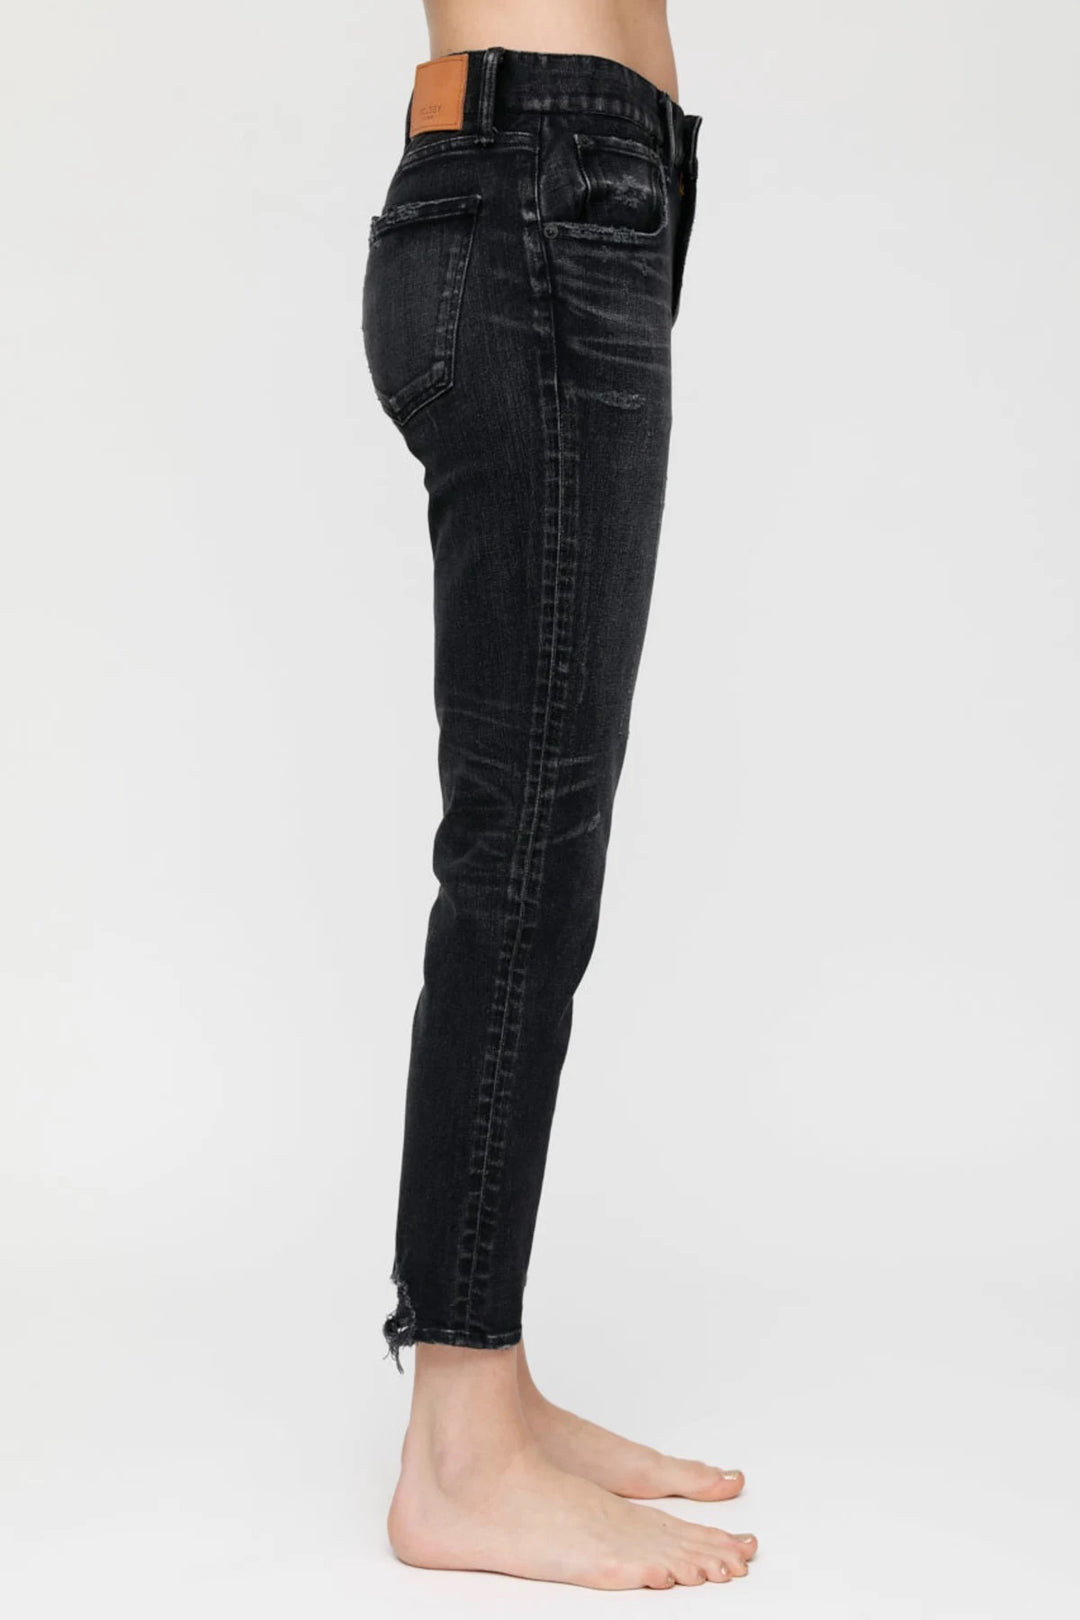 Moussy - MV Velma Skinny Jeans in Black 020